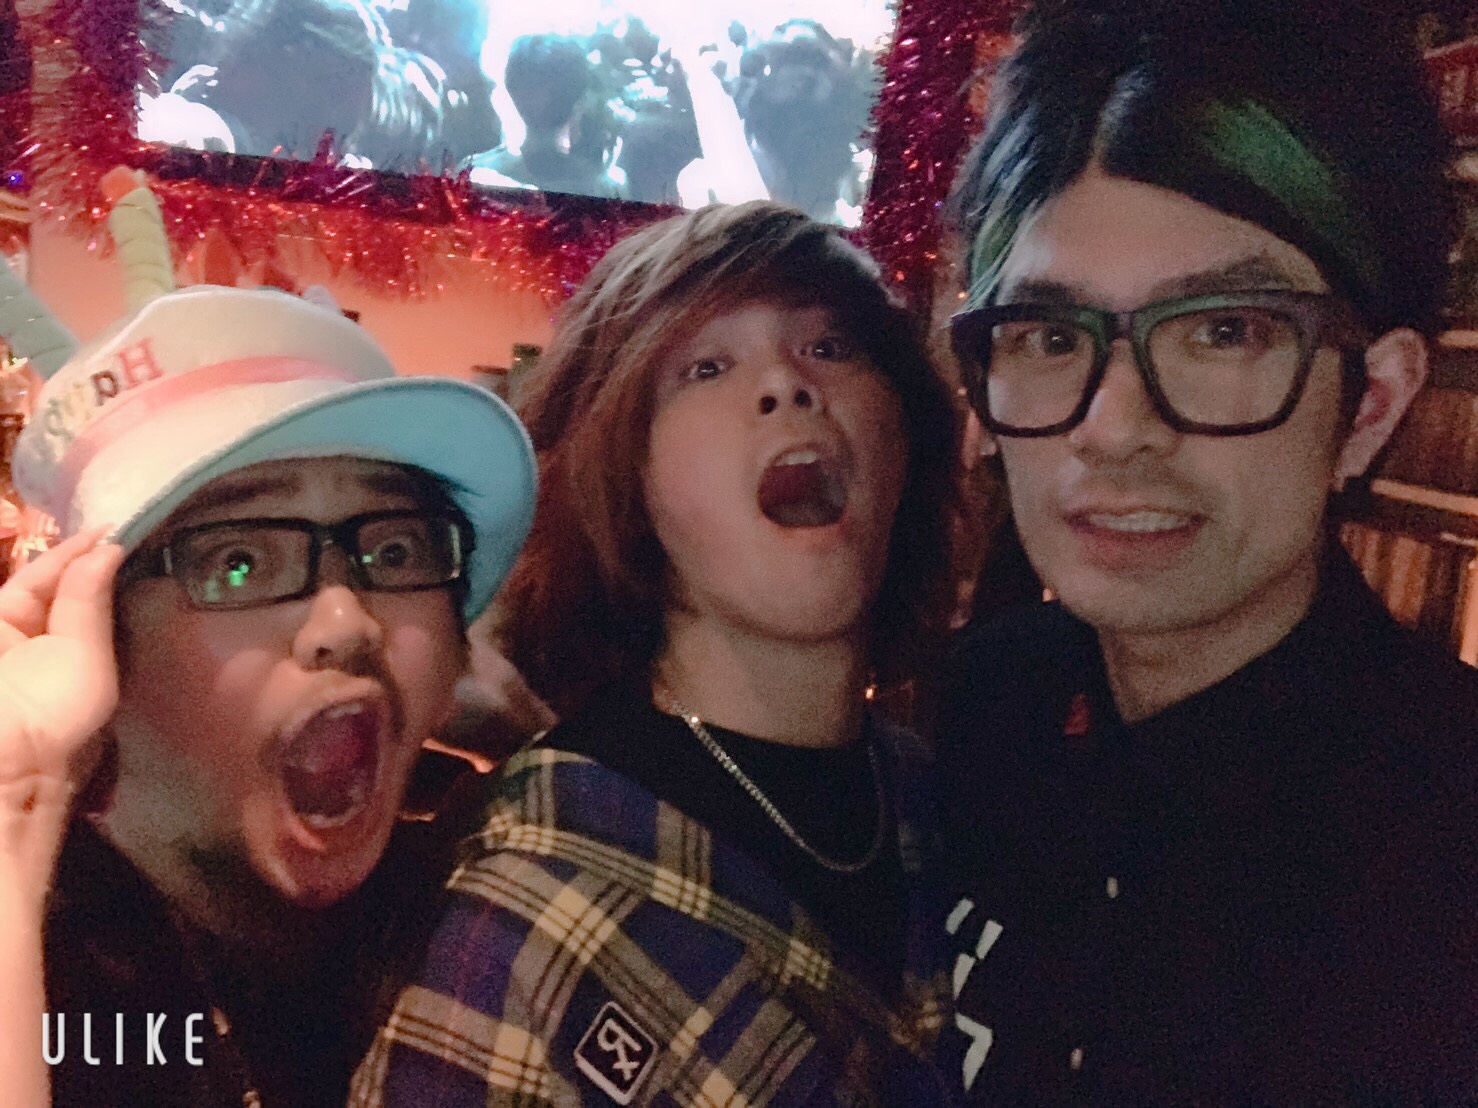 https://bar-rockaholic.jp/shibuya/blog/S__9814040.jpg